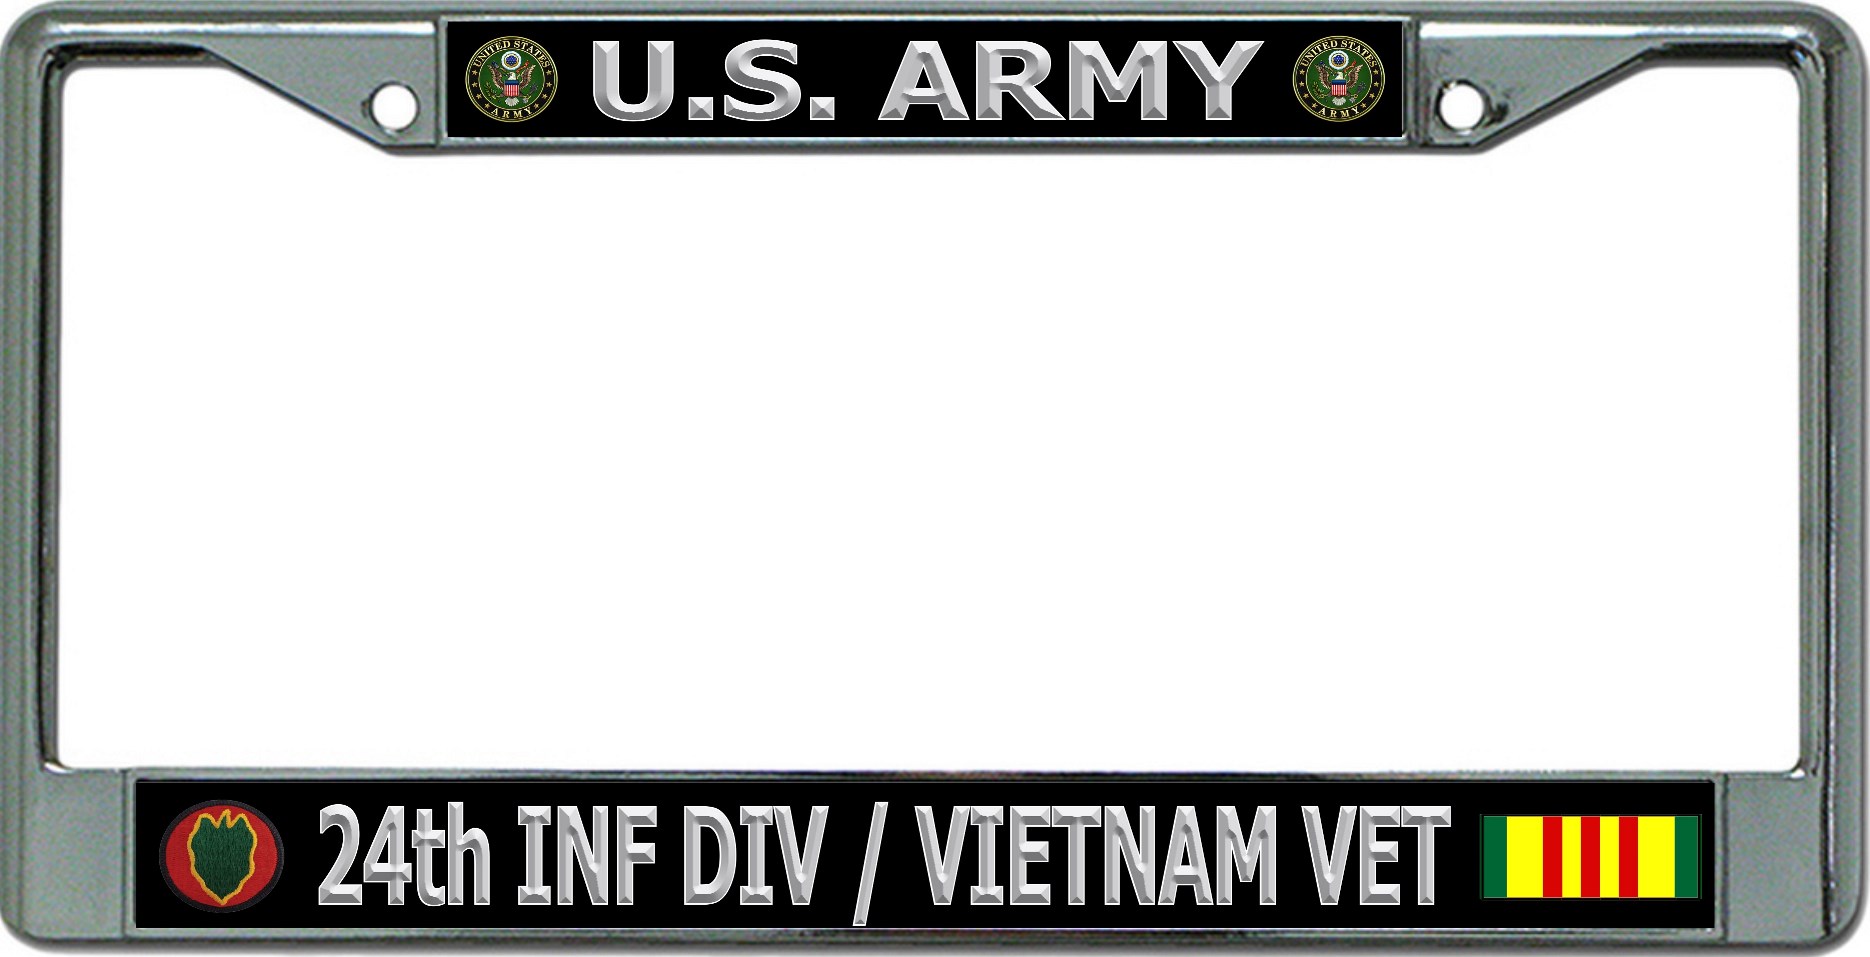 U.S. Army 24th Infantry Div Vietnam Vet Chrome License Plate FRAME